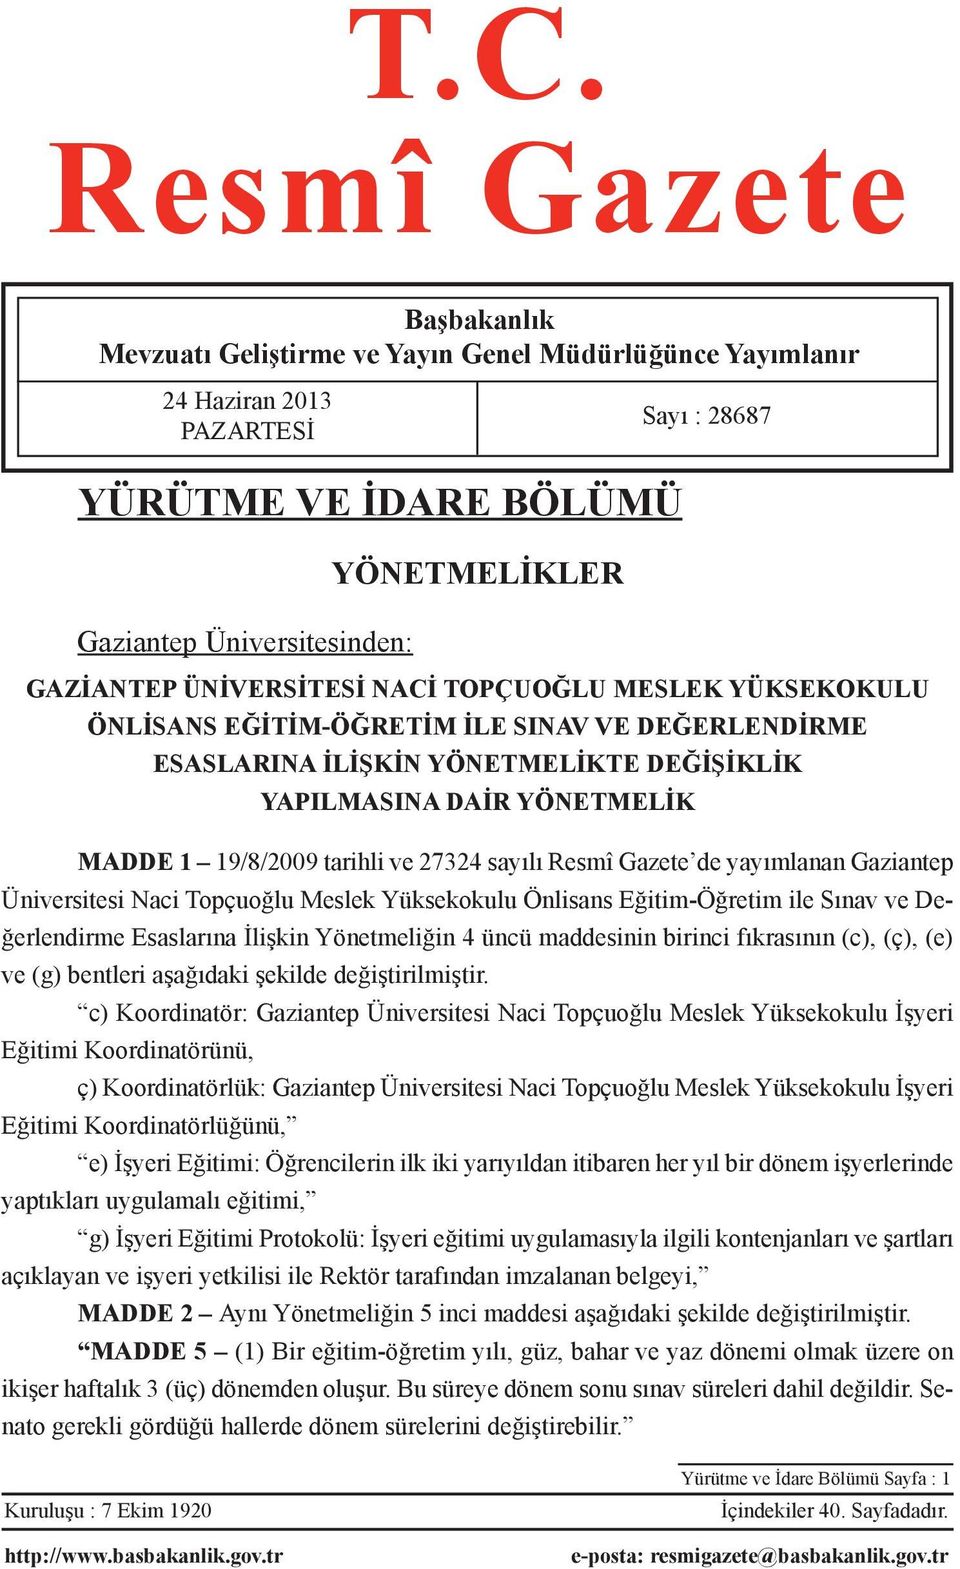 tarihli ve 27324 sayılı Resmî Gazete de yayımlanan Gaziantep Üniversitesi Naci Topçuoğlu Meslek Yüksekokulu Önlisans Eğitim-Öğretim ile Sınav ve Değerlendirme Esaslarına İlişkin Yönetmeliğin 4 üncü